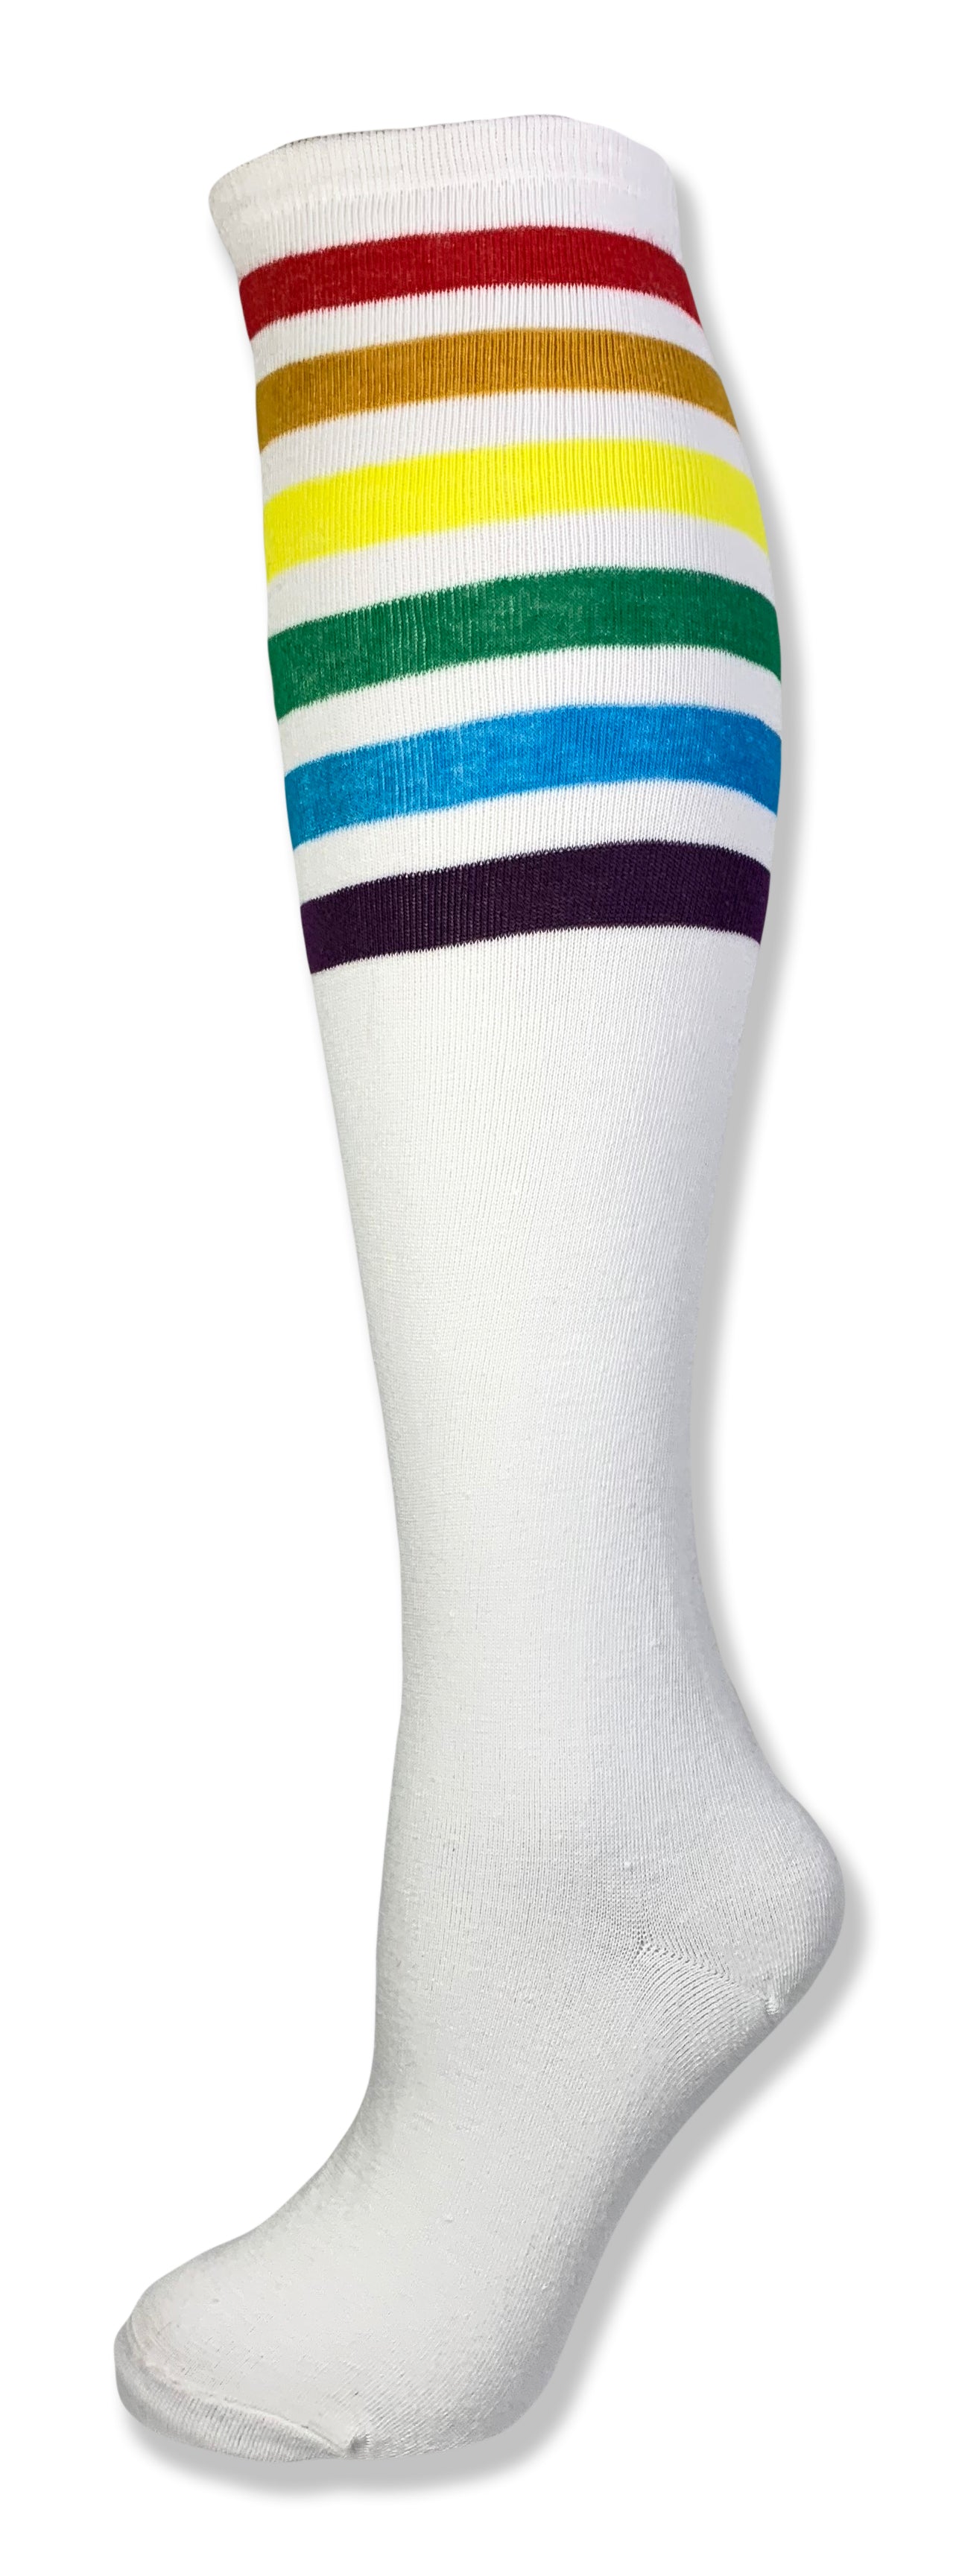 Unisex Rainbow Striped Knee High Tube Sock